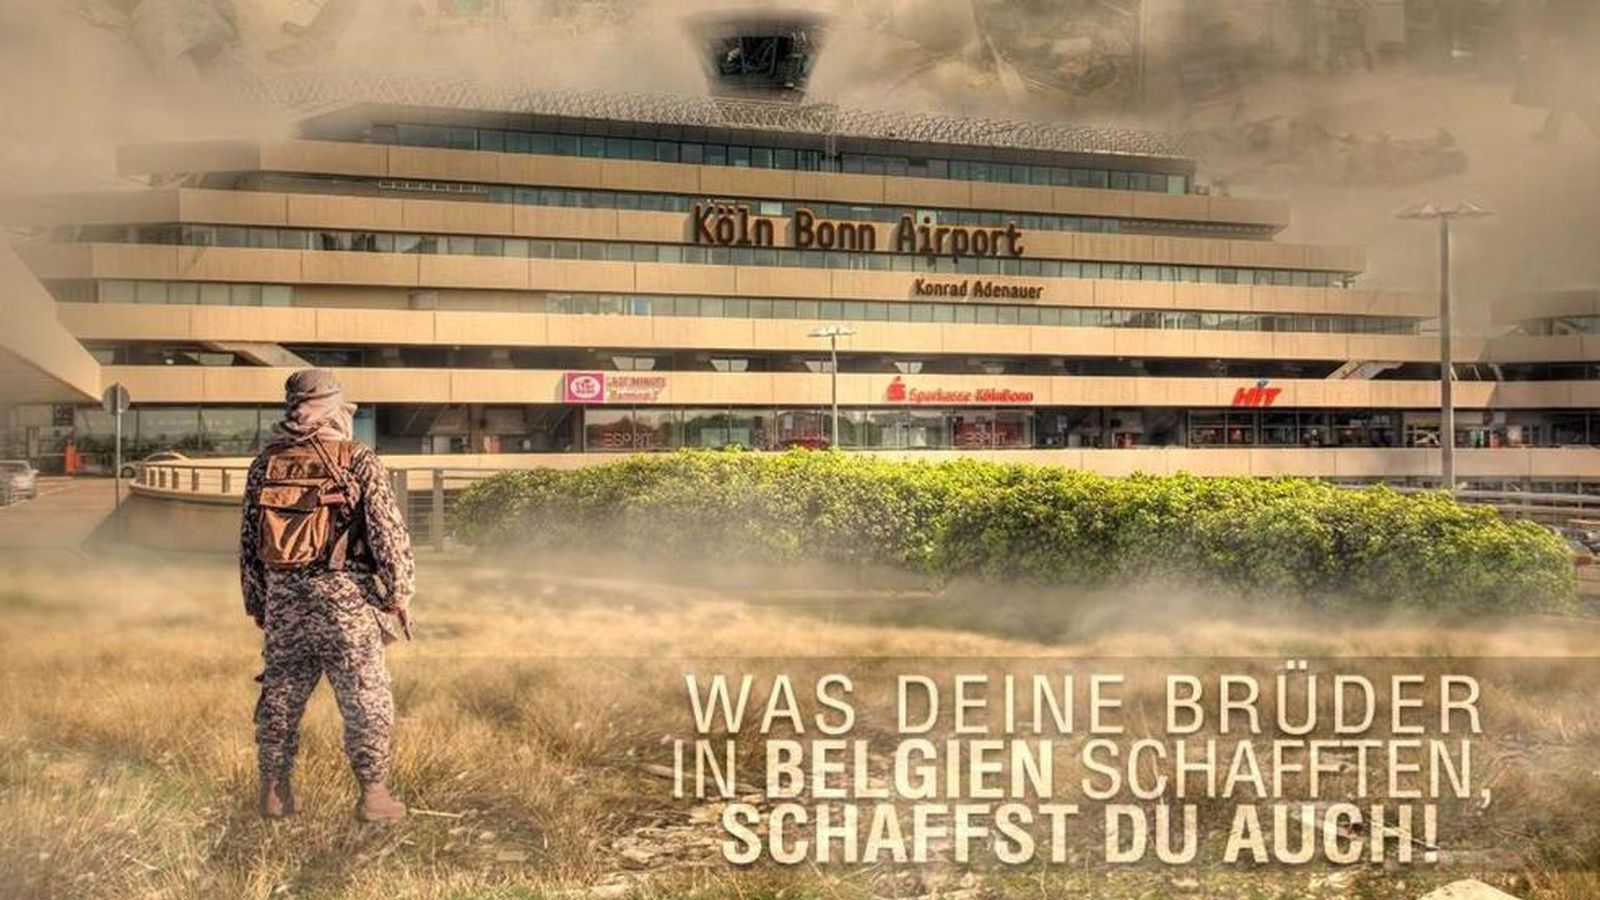 Foto: Imagen difundida por el Estado Islámico en la que aparece el aeropuerto de Colonia-Bonn